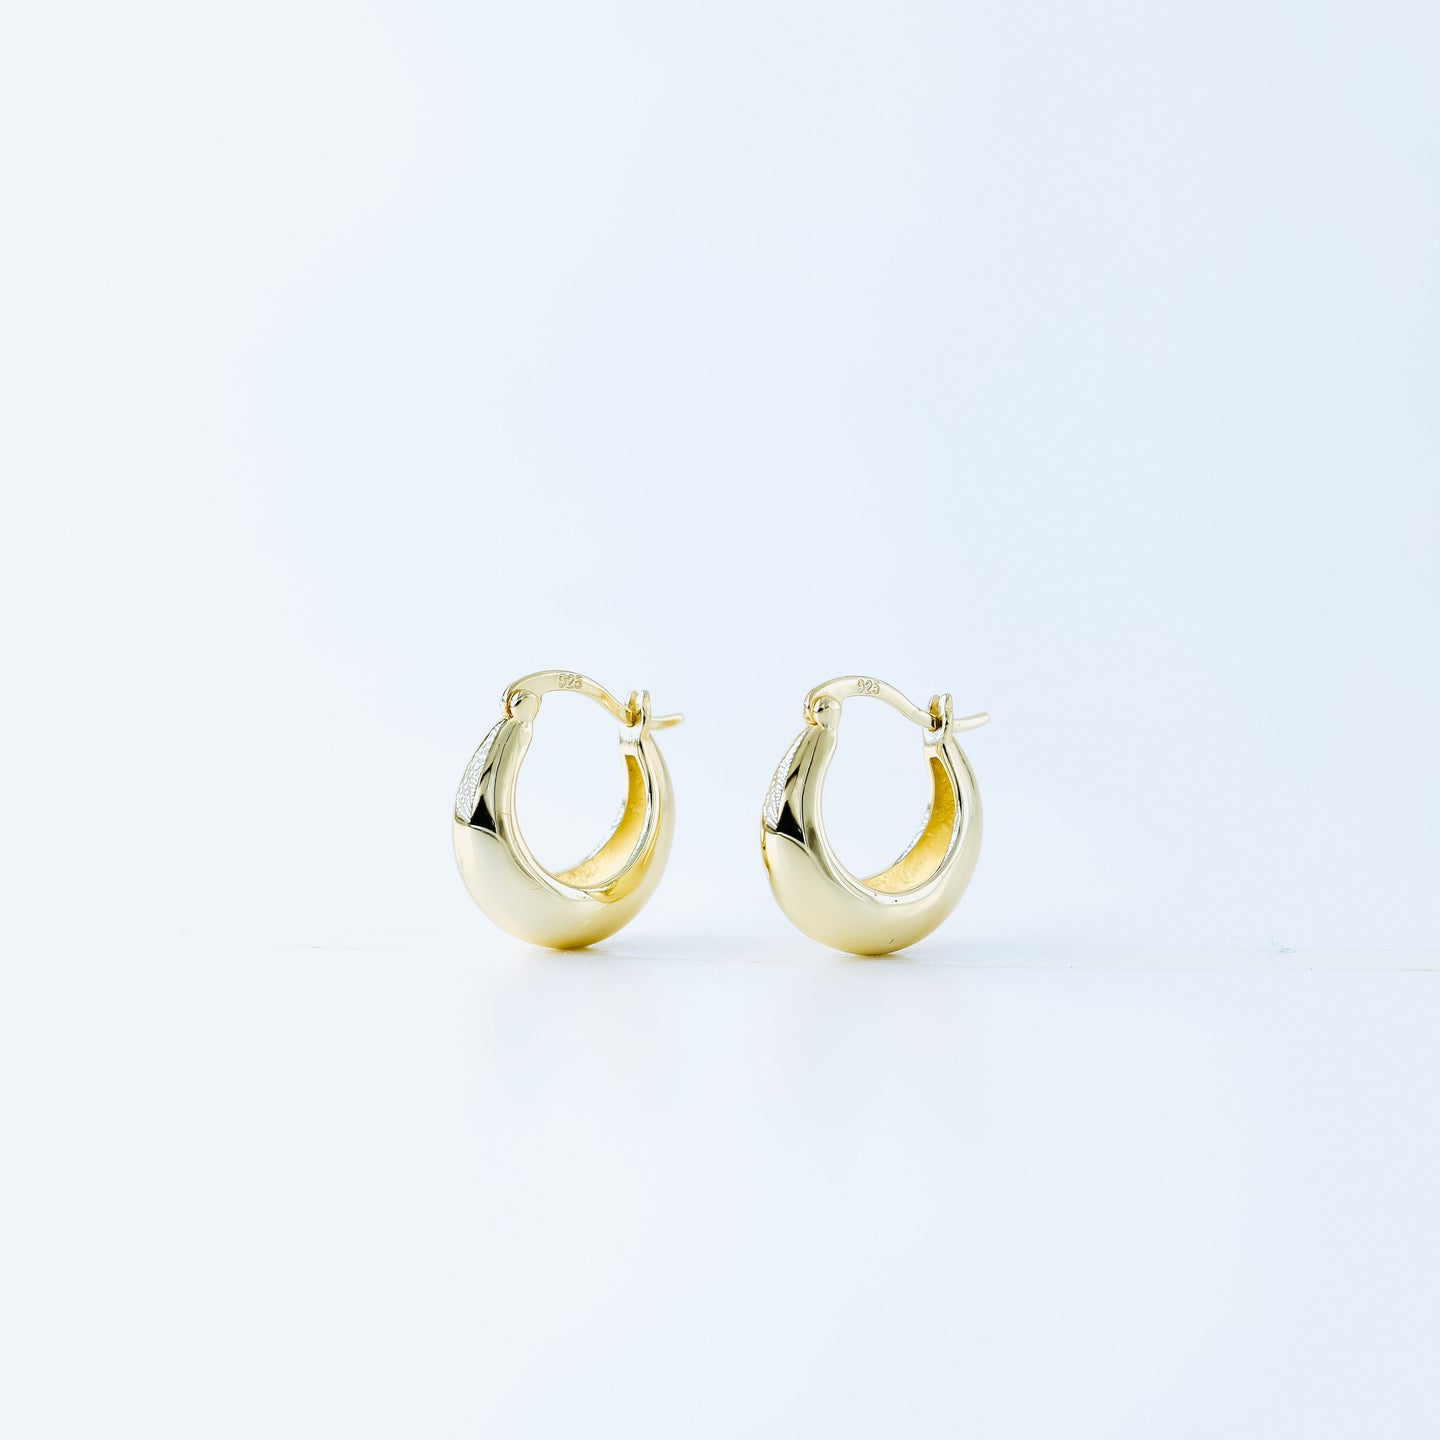 Statement Tapered Hoop Earrings • Gold Hoop Earrings • Lightweight Earrings • Minimalist Earrings • bySDMjewels jewelry